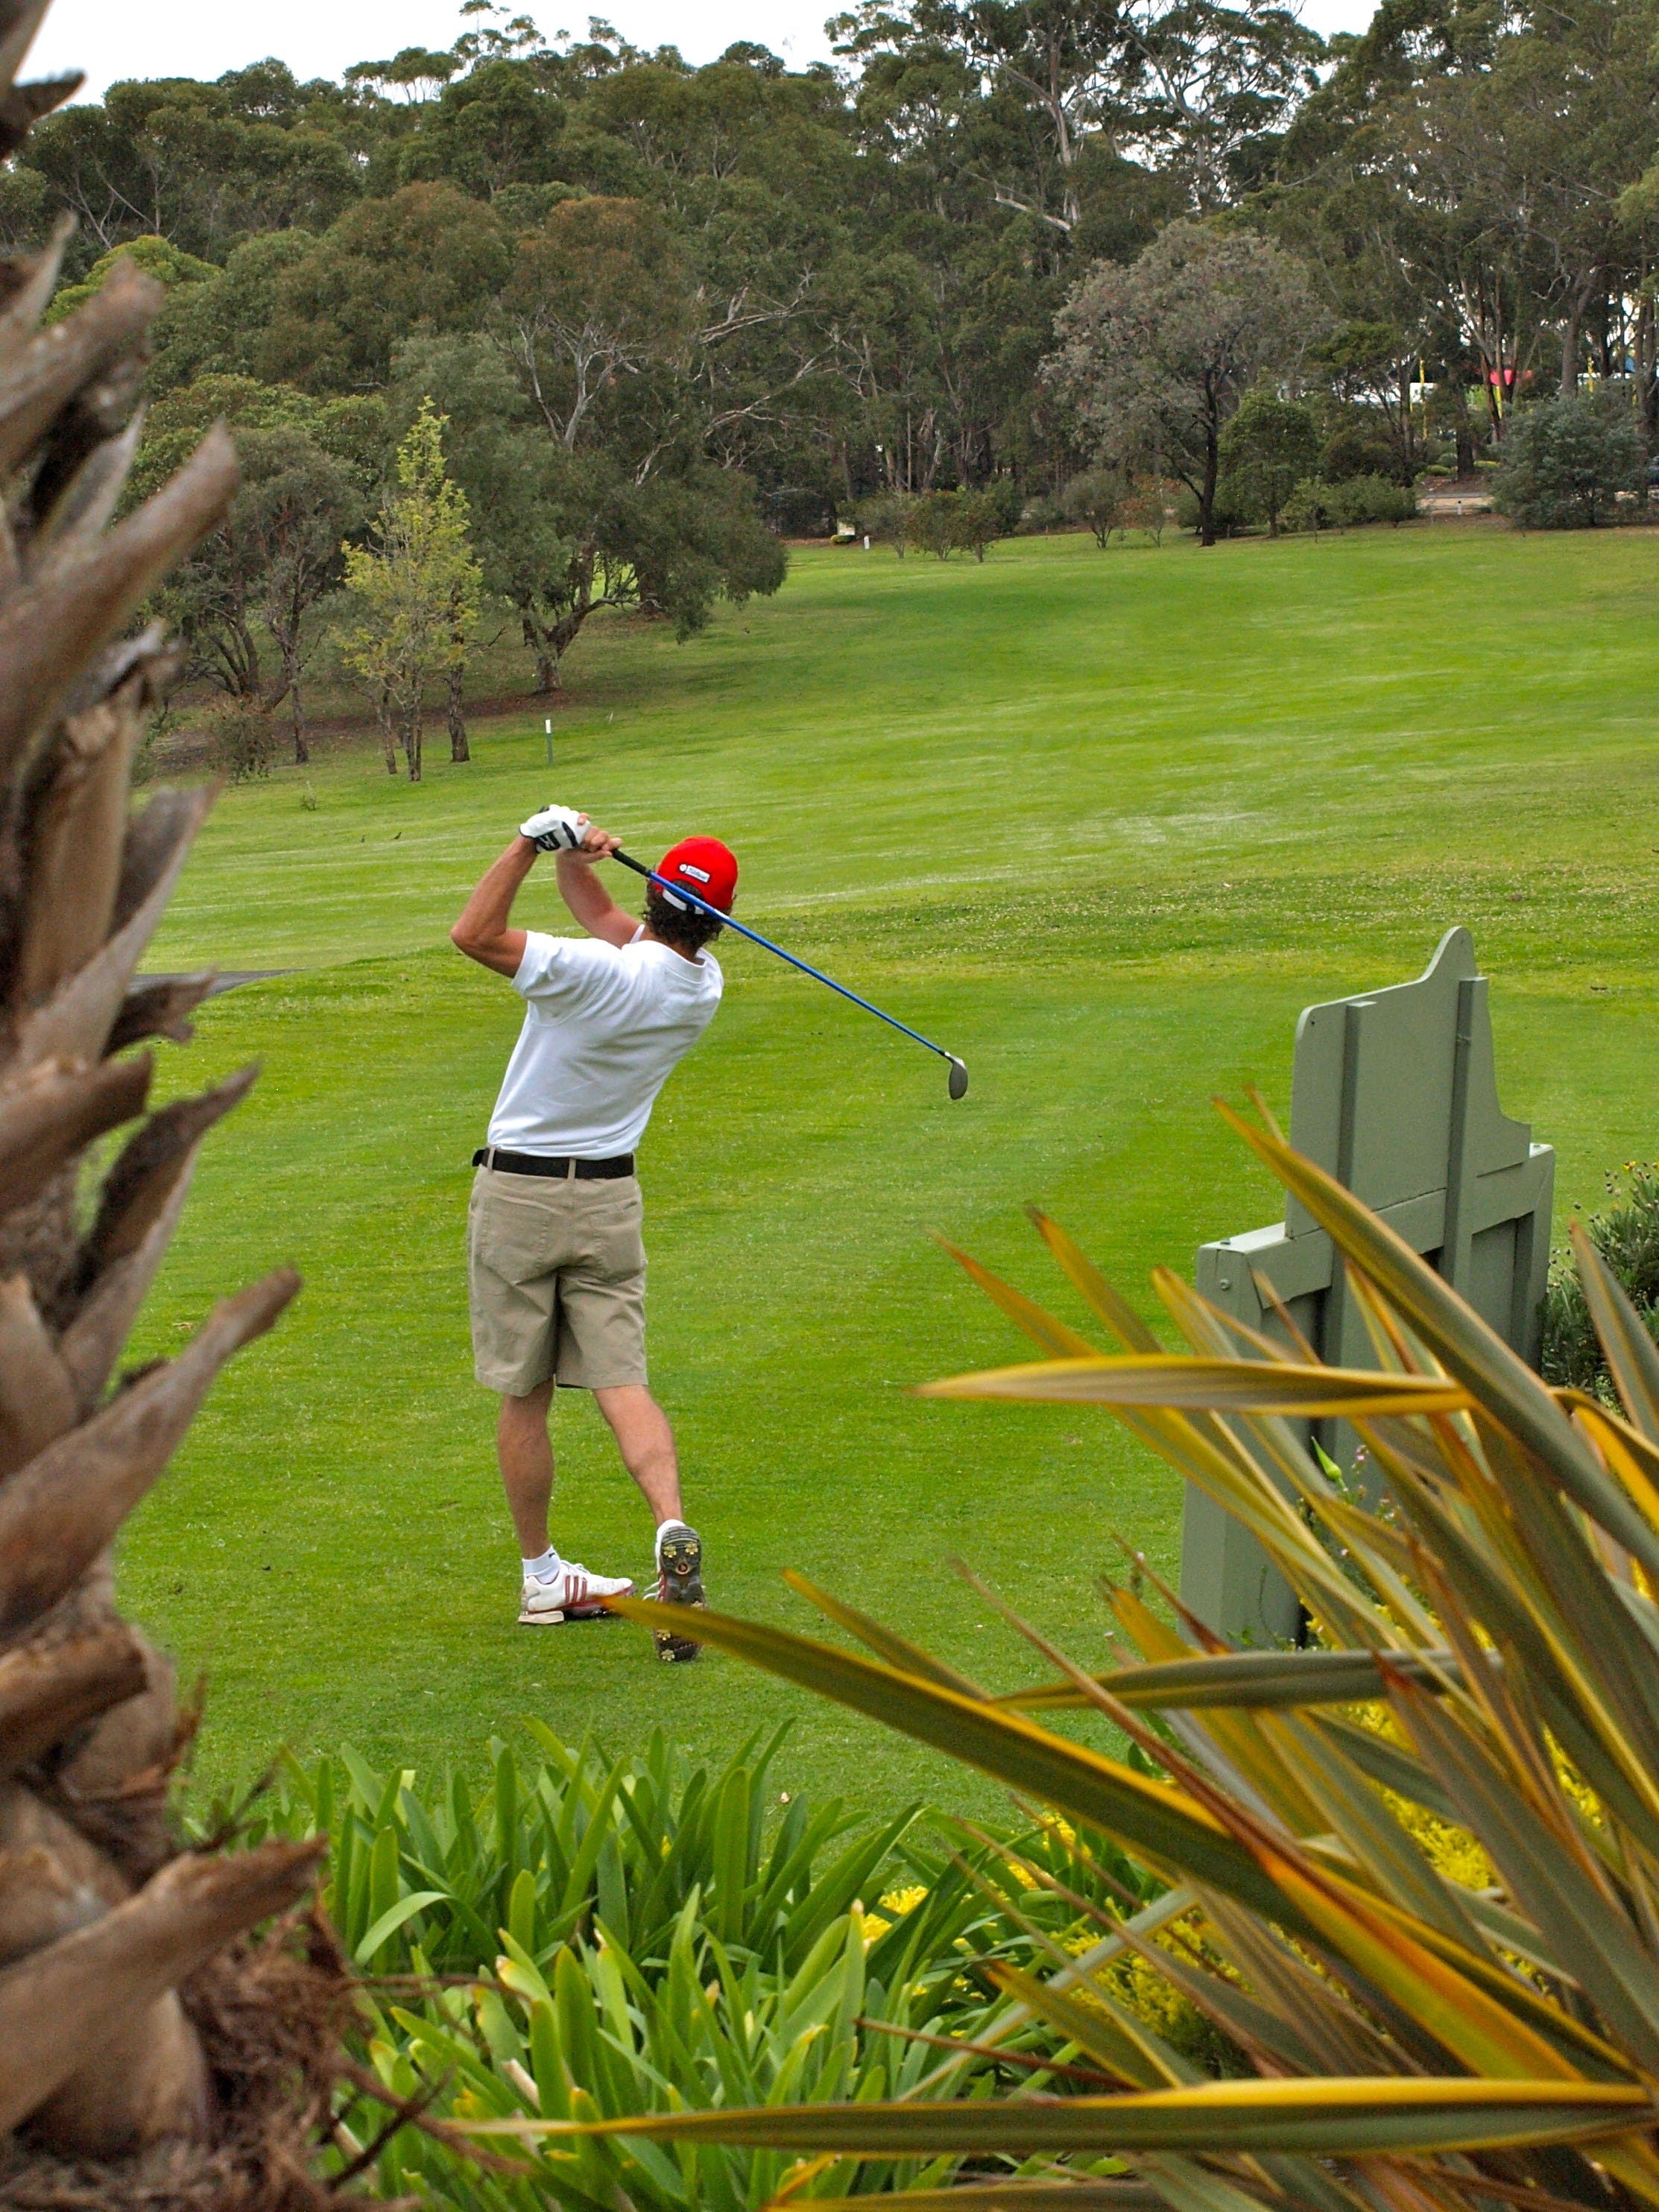 Pambula Merimbula Golf Club - Redcliffe Tourism